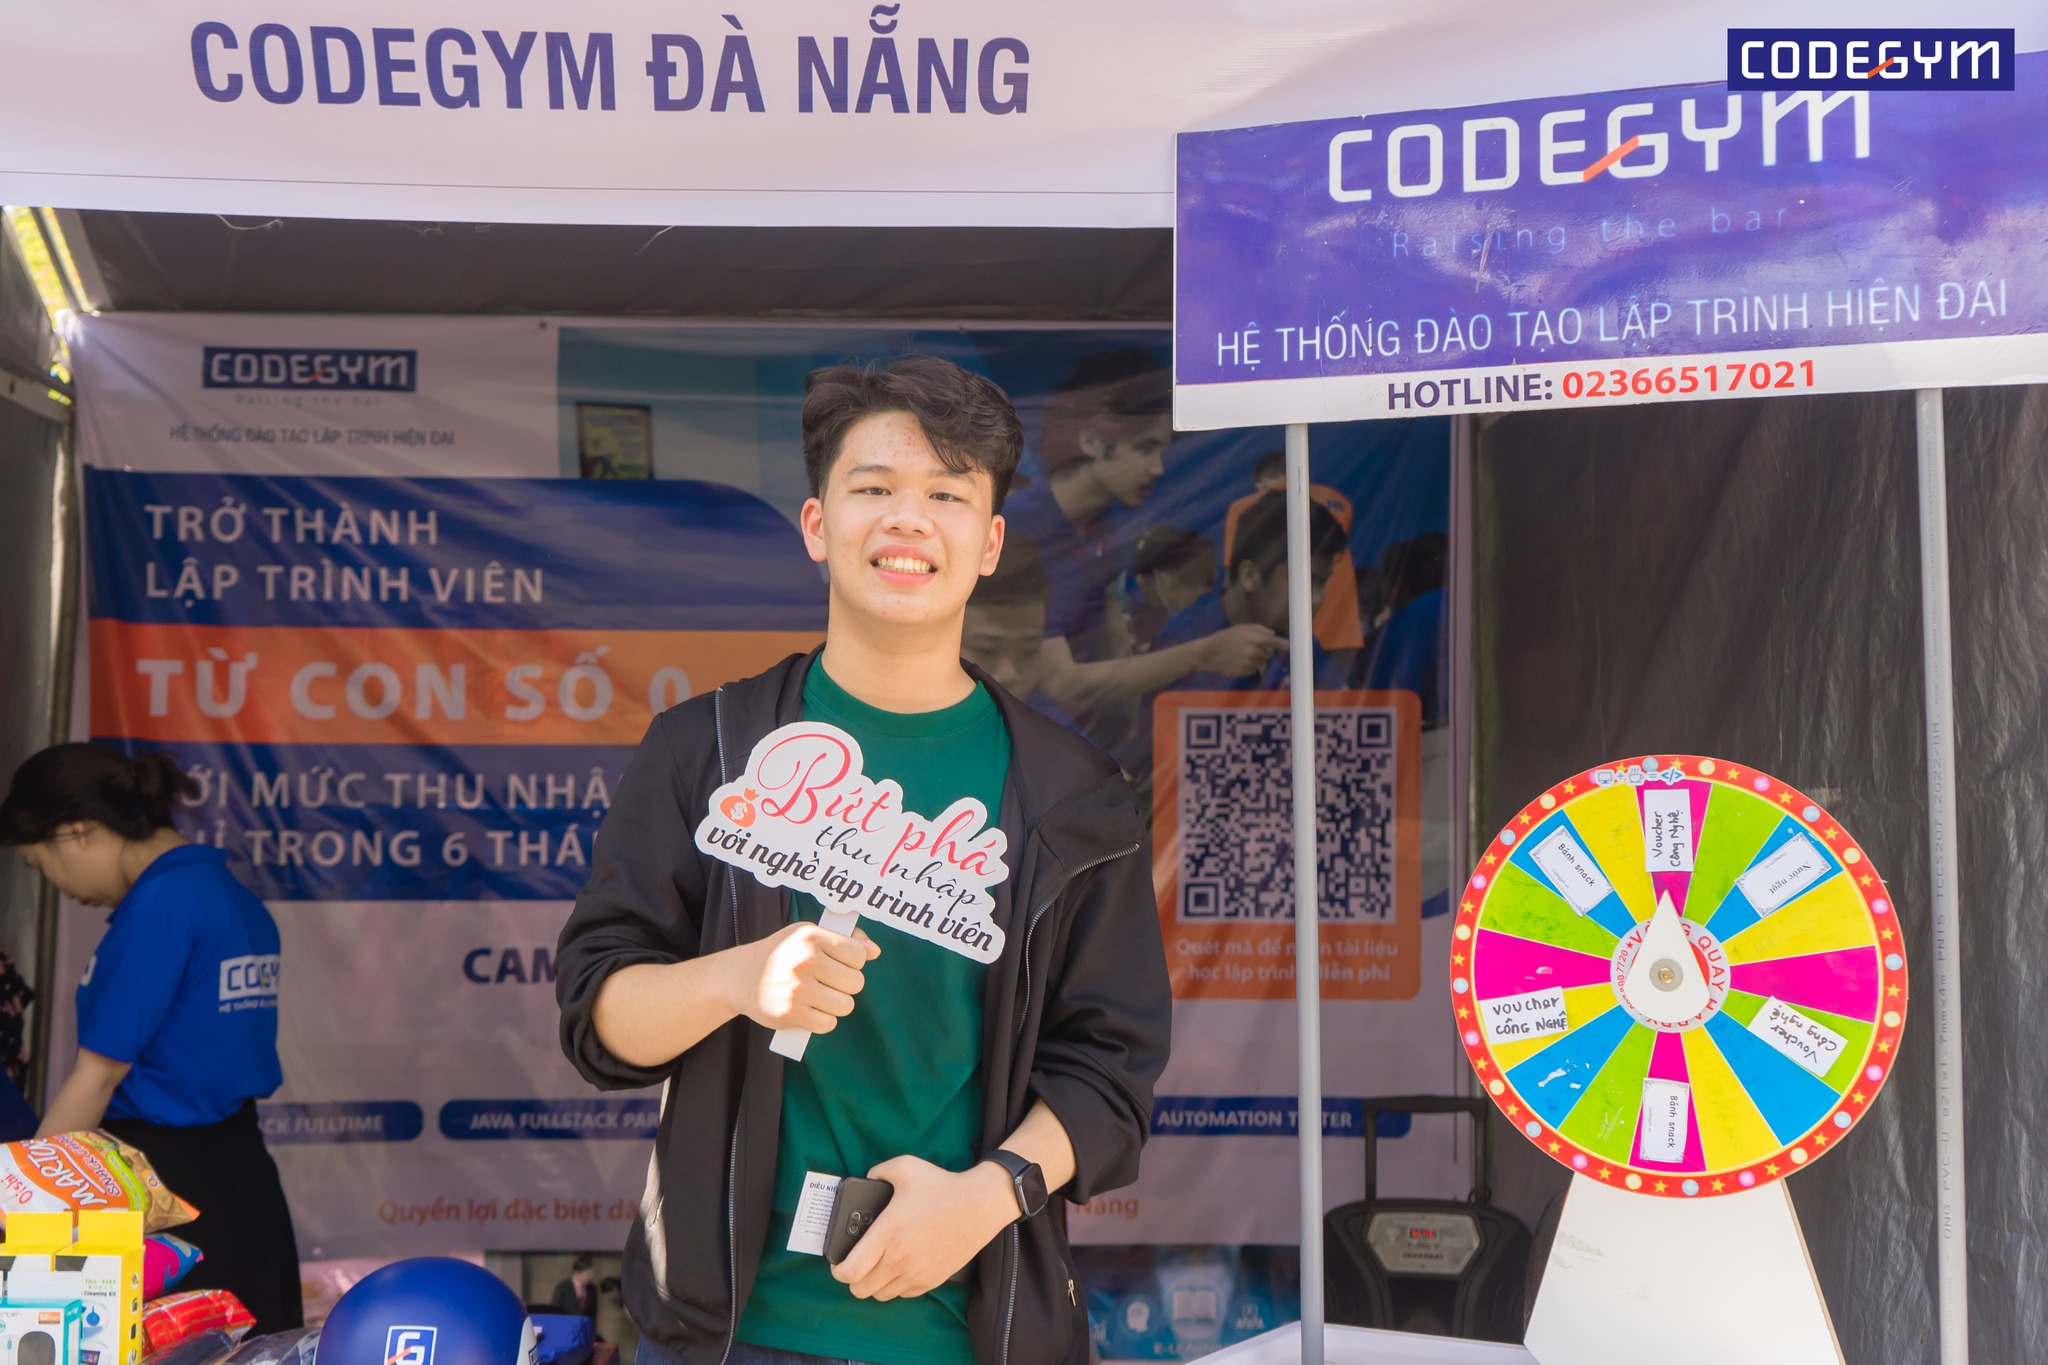 CodeGym Đà Nẵng chào đón Tân sinh viên Trường Đại học Kinh tế